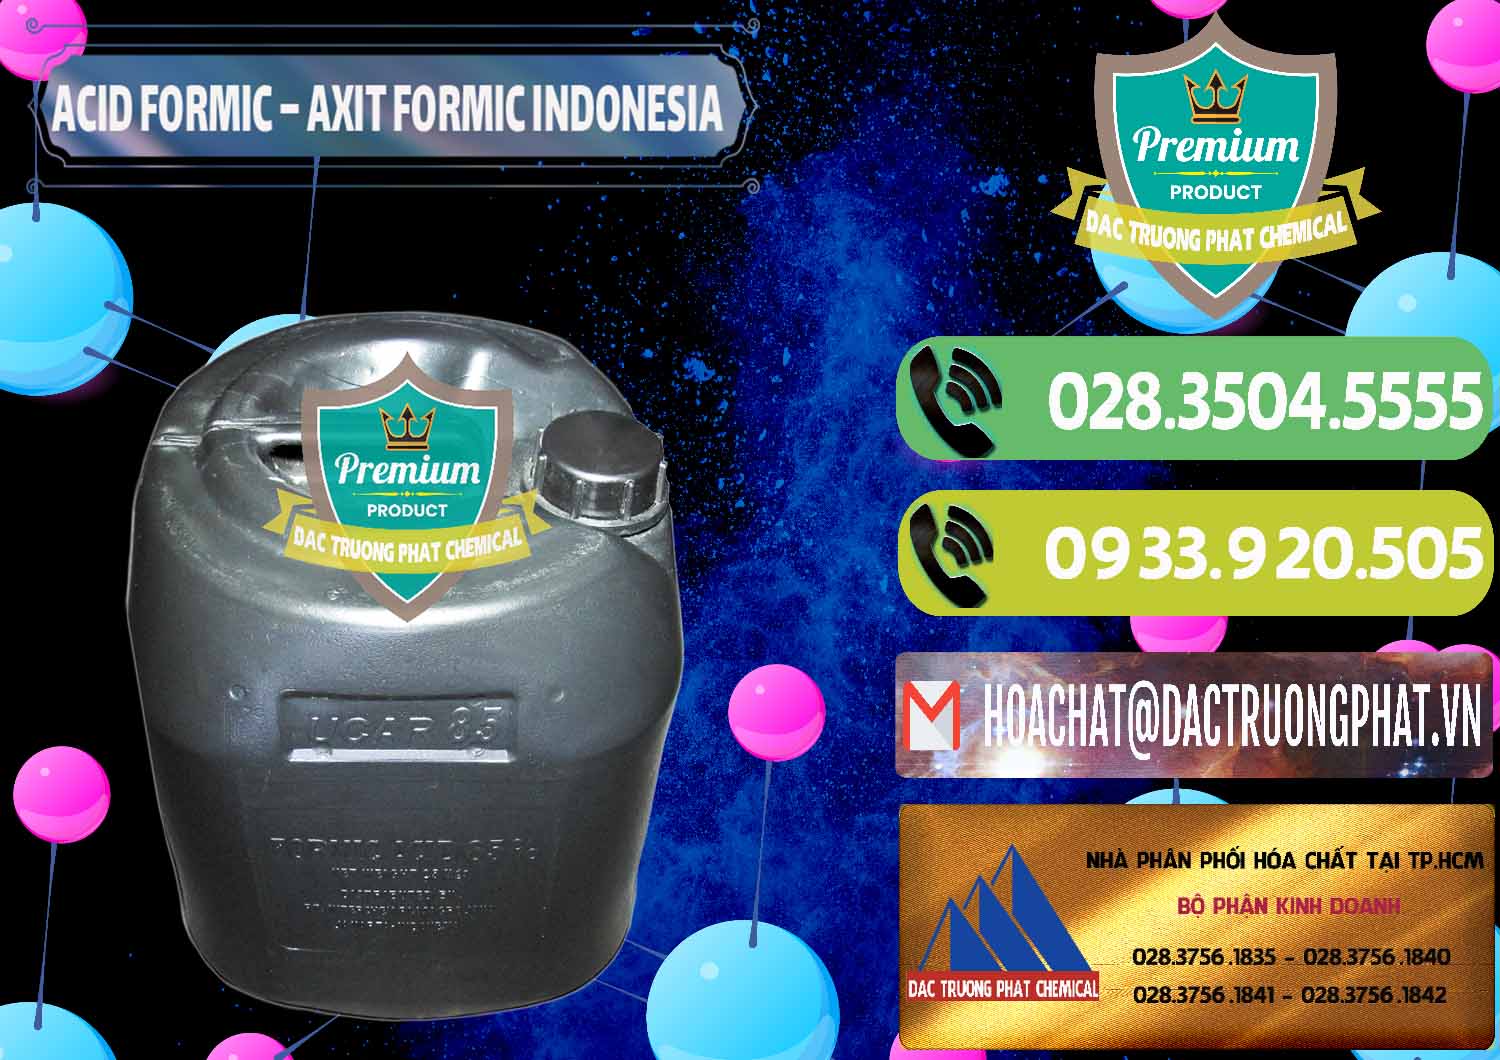 Công ty bán và cung cấp Acid Formic - Axit Formic Indonesia - 0026 - Cty phân phối và cung ứng hóa chất tại TP.HCM - hoachatmientay.vn